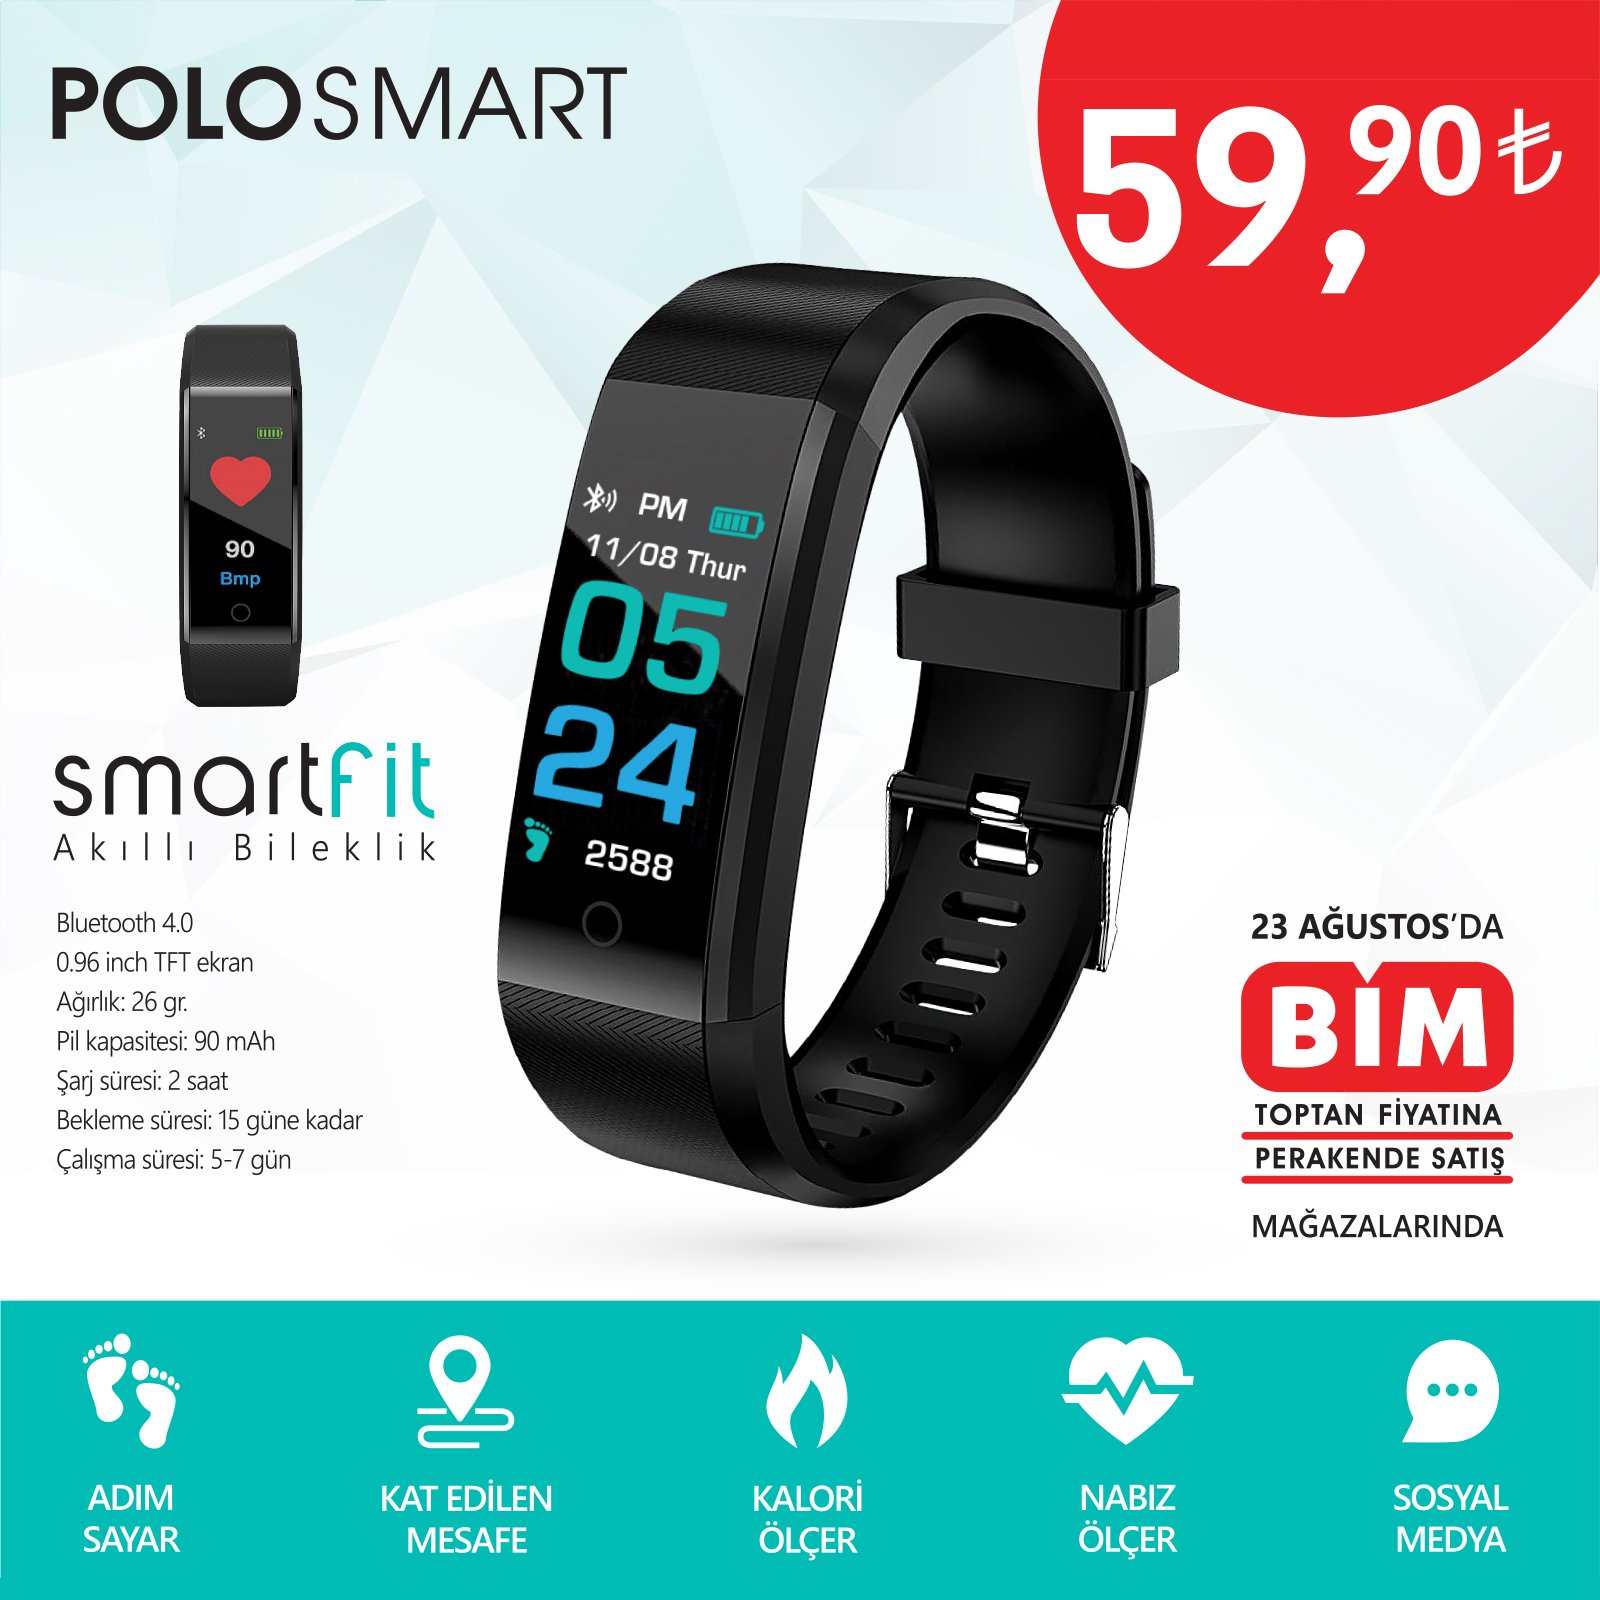 Polosmart on X: "Polosmart - Smartfit Akıllı Bileklik, 23 Haziran Cuma  gününden sonra tüm BİM mağazalarında. Üstelik yalnızca 59,9 TL. Fırsatı  Kaçırma ! #bim #kampanya #fırsat #gününfırsatı #akıllısaat #smartband  #smartwrist #spor #fitness #